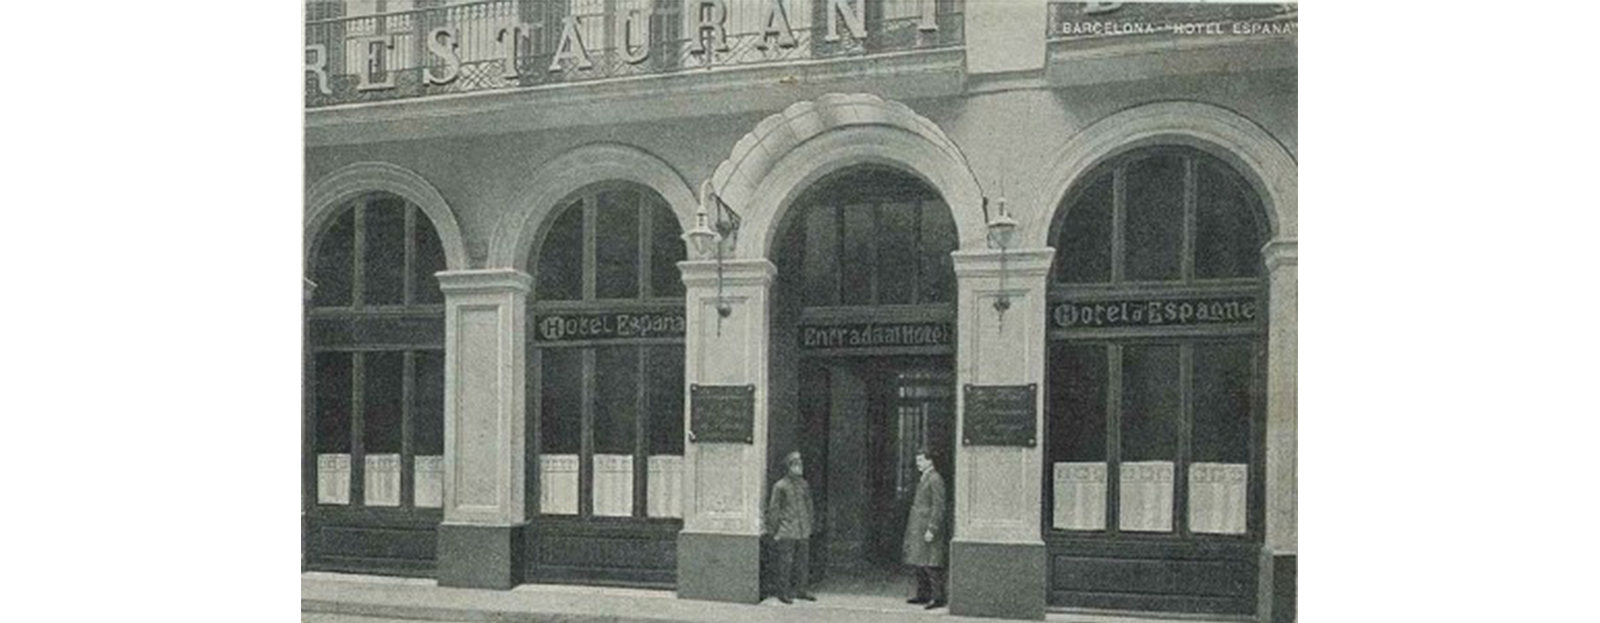 Historic photograph of Hotel España circa 1905